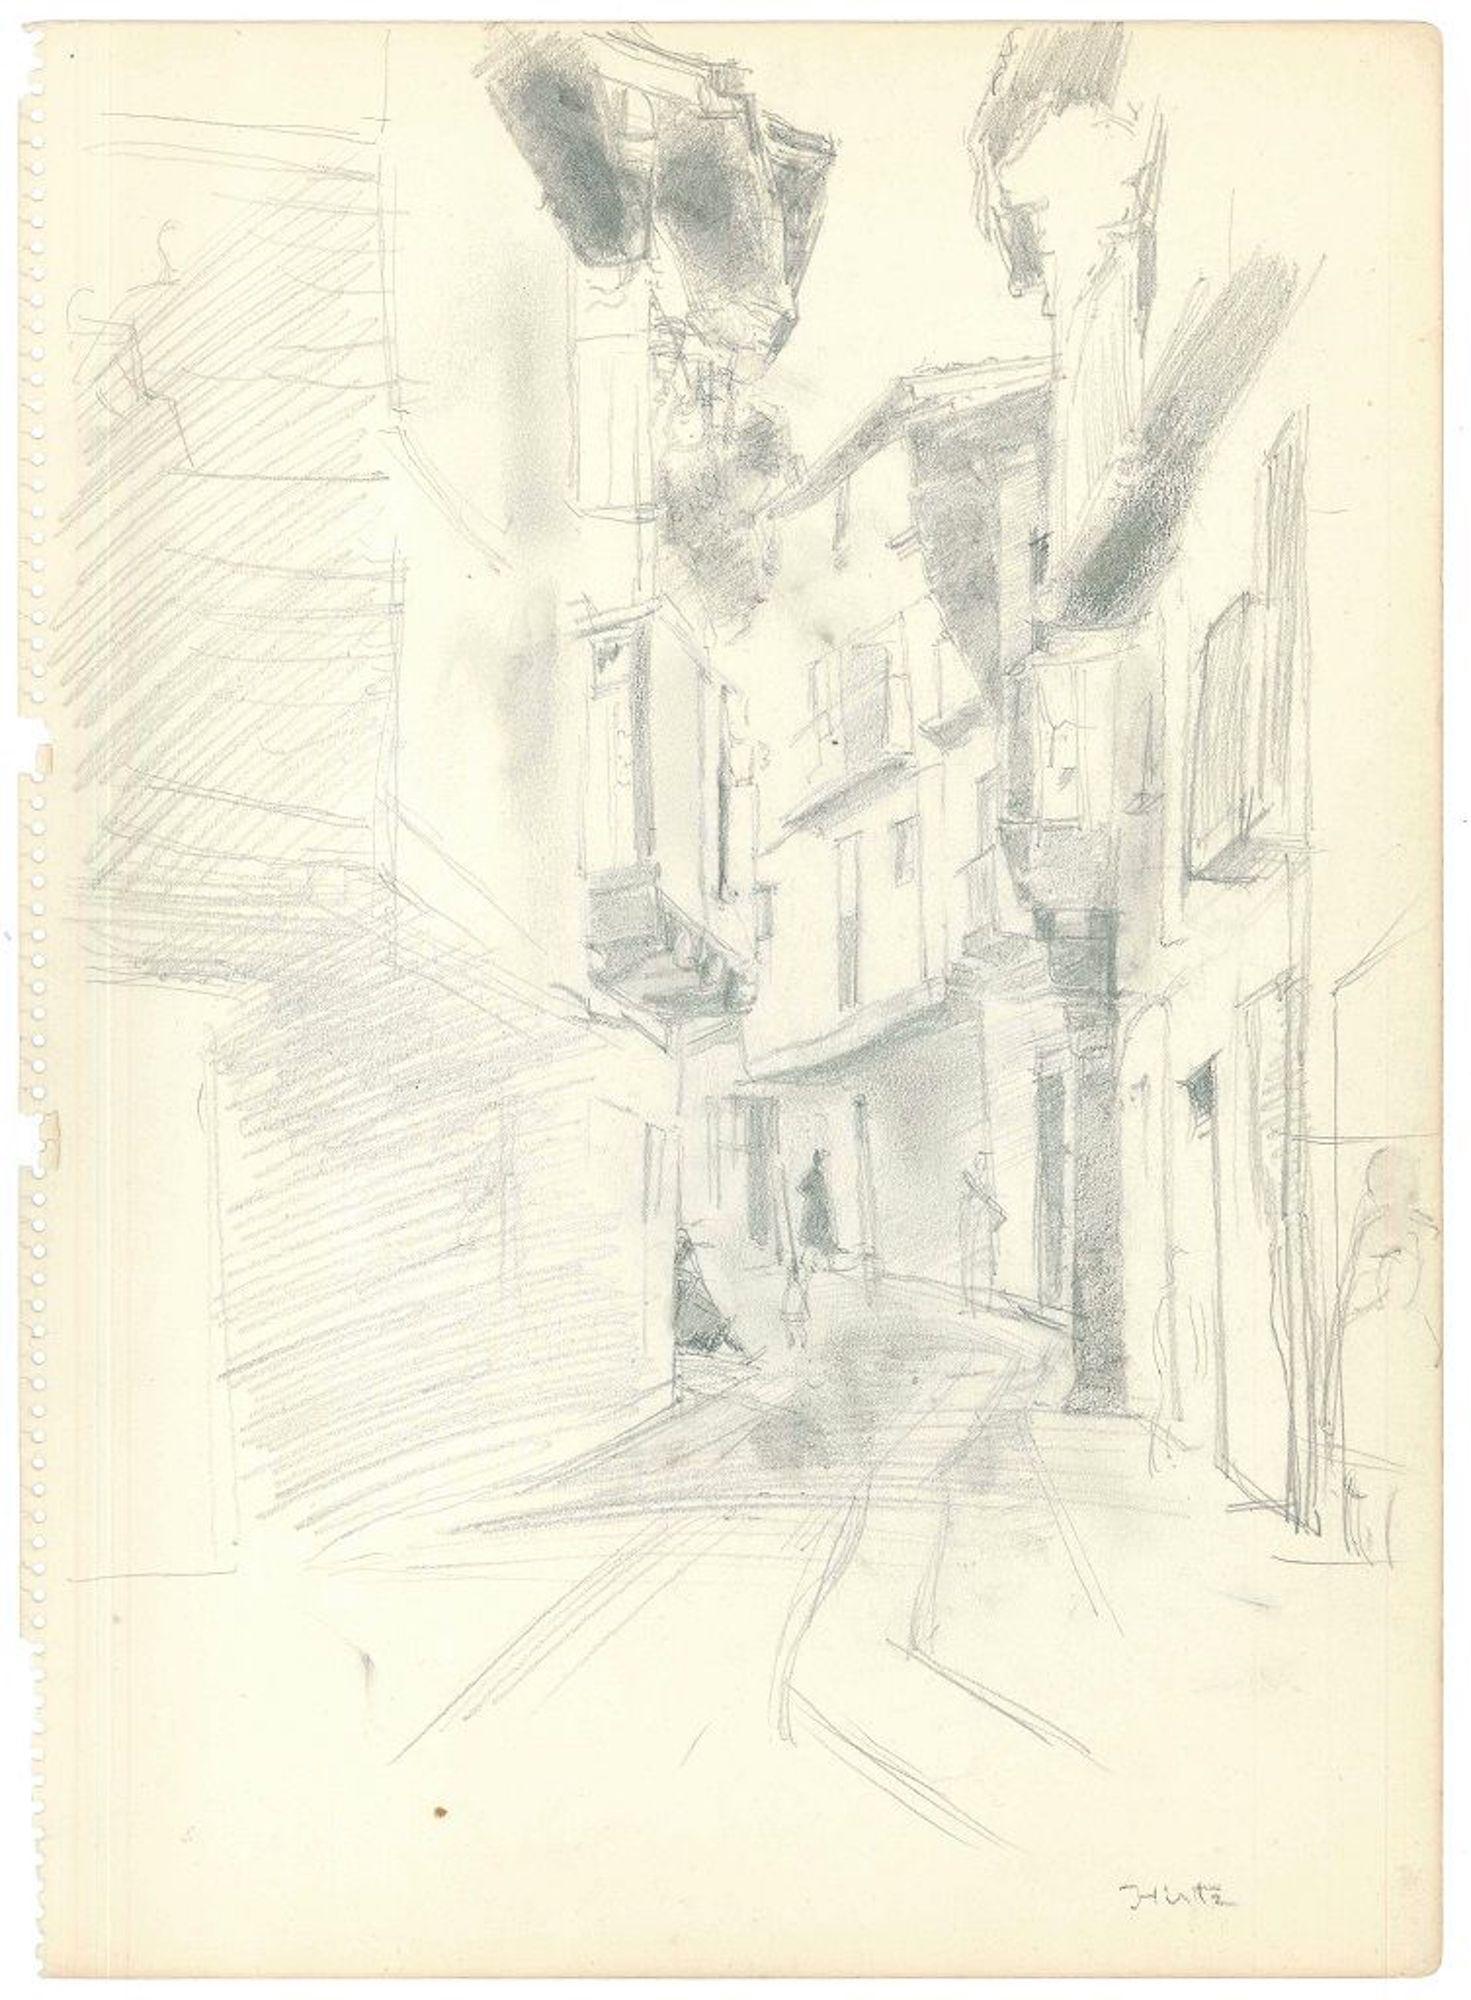 Narrow Lane - Dessin original au crayon sur papier de J. Hirtz - Milieu du XXe siècle